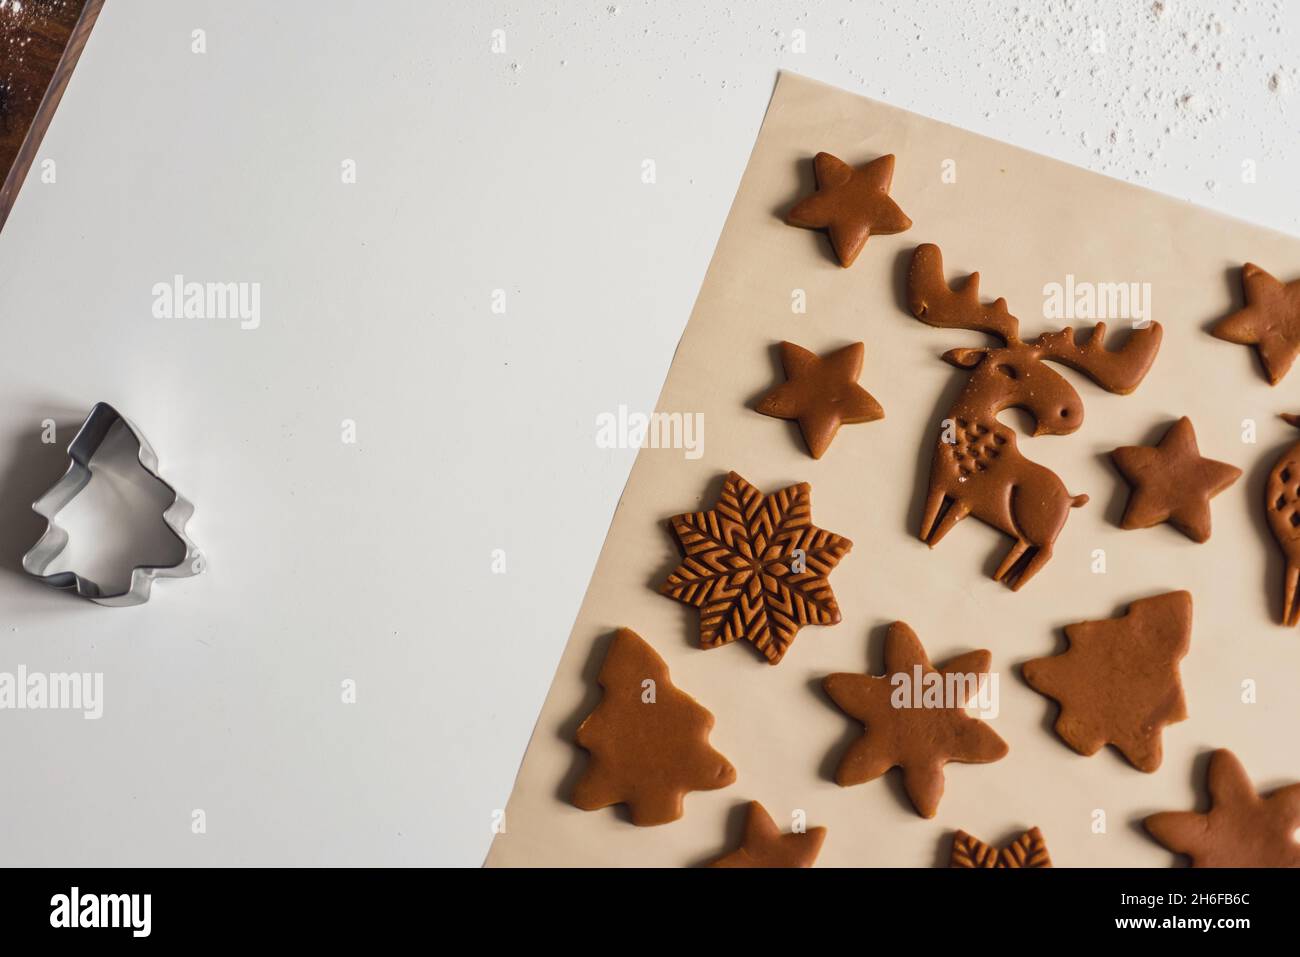 Motif de biscuits de pain d'épice de Noël sous forme d'animaux, d'arbres, de flocons de neige.Biscuits coupés de pâte crue sur un tapis de cuisson, vue de dessus, gros plan Banque D'Images